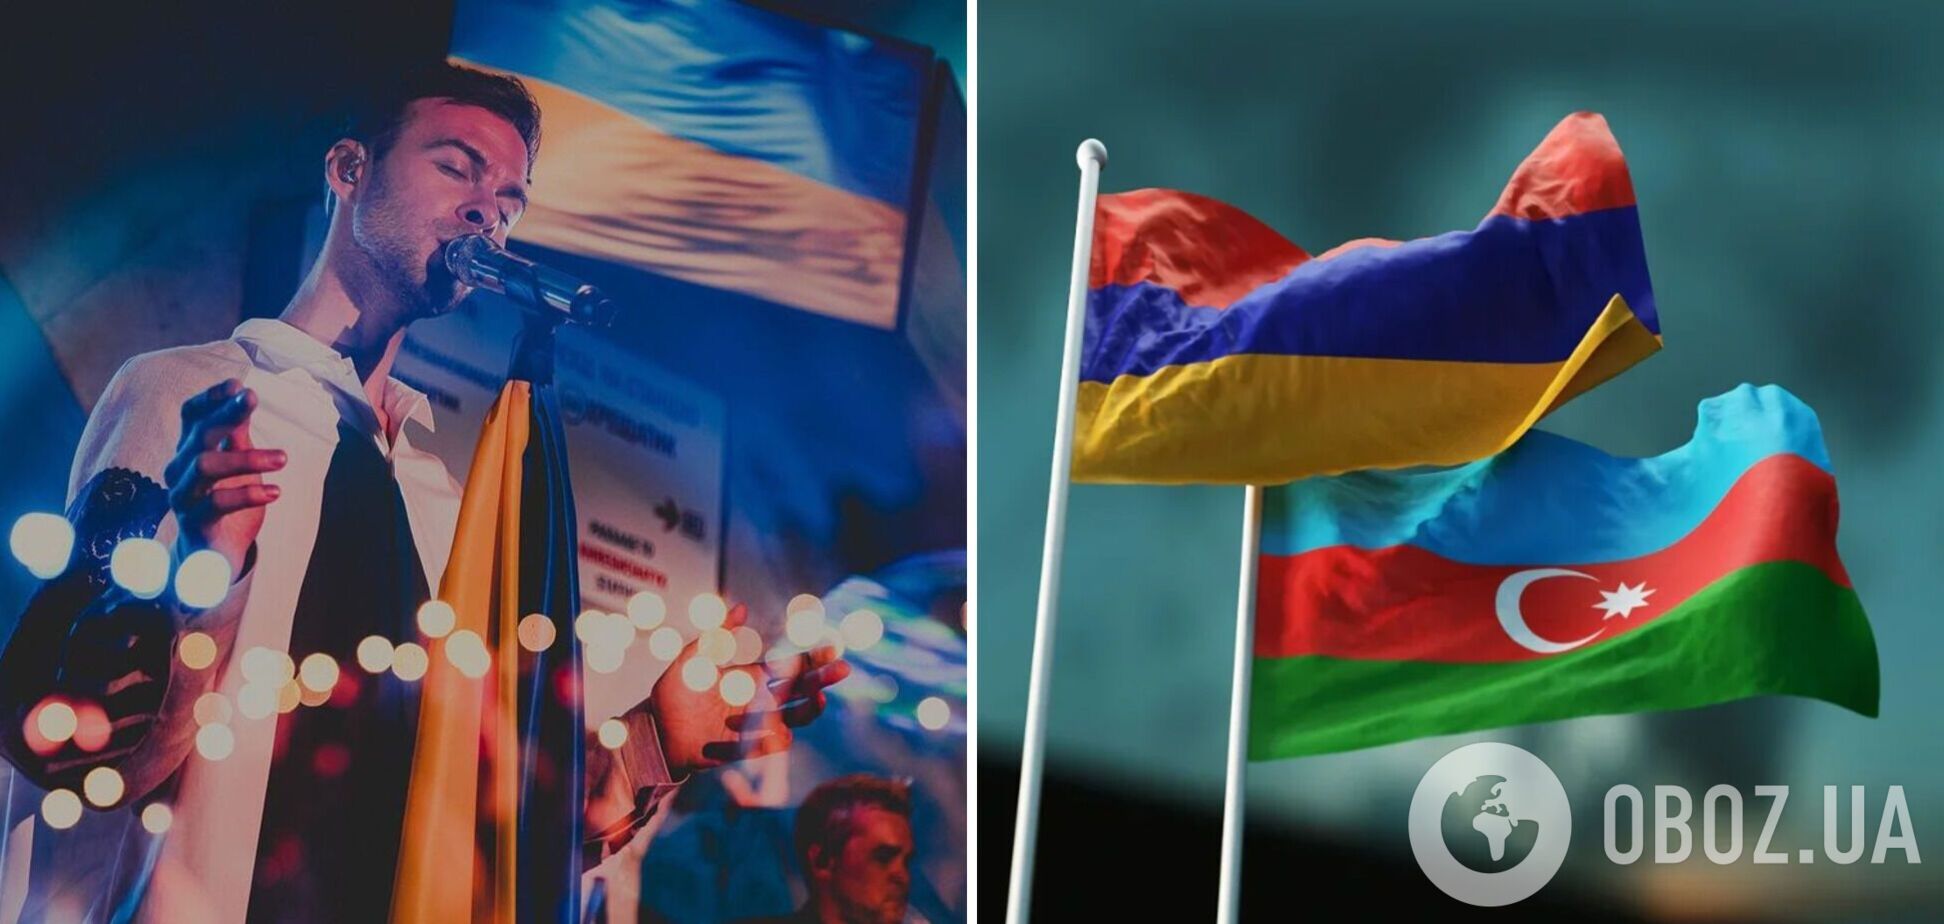 Макс Барських скасував концерт в Азербайджані через агресію щодо Вірменії